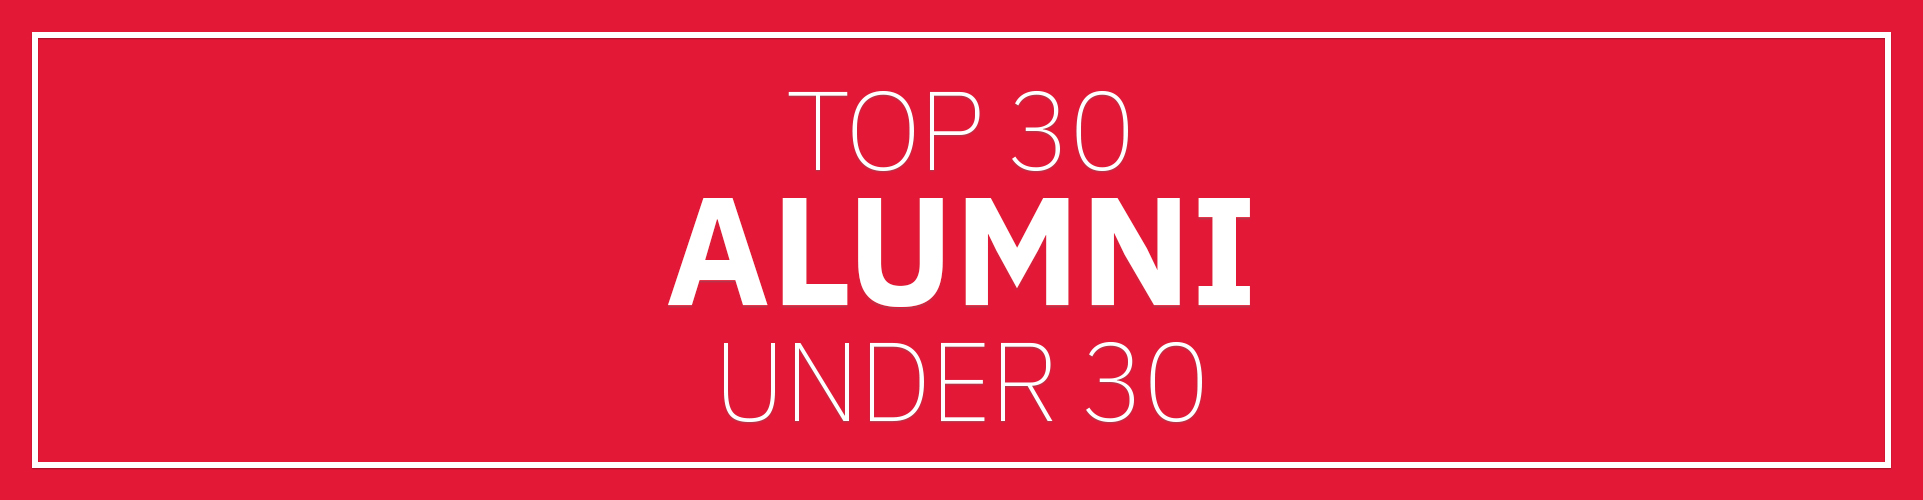 Top 30 Alumni banner